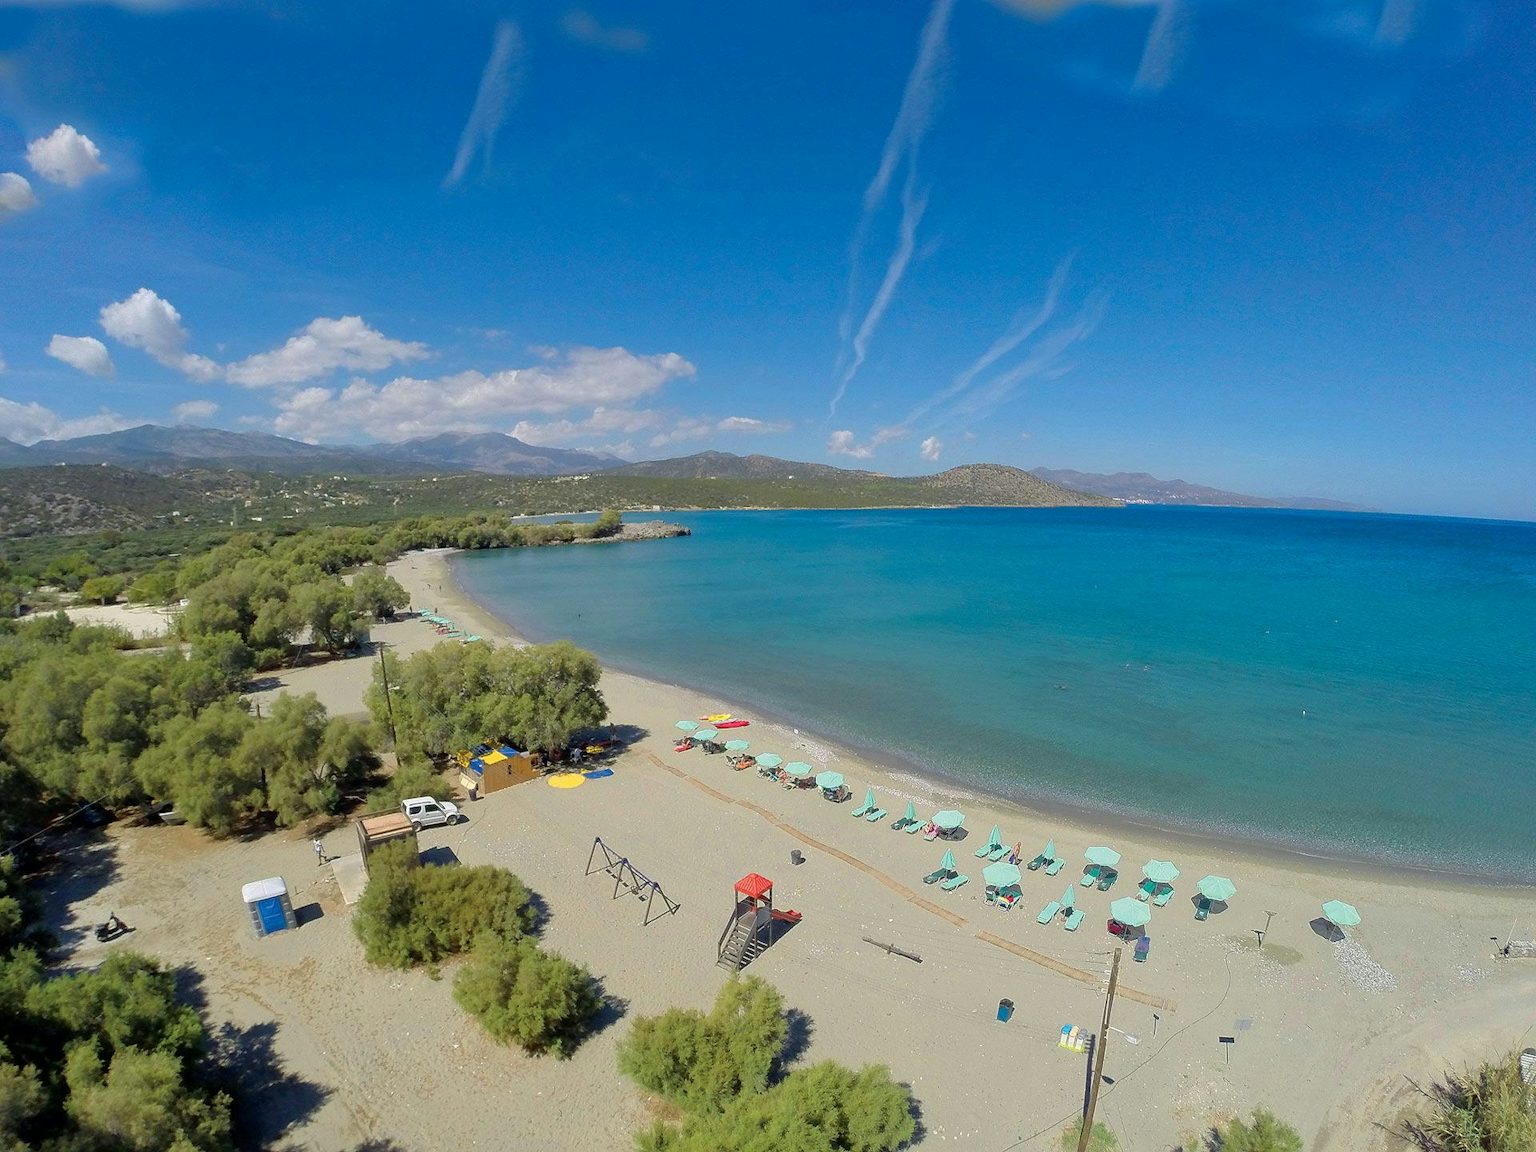 Agios Panteleimonas: An Ideal Beach for Windsurfing and Families